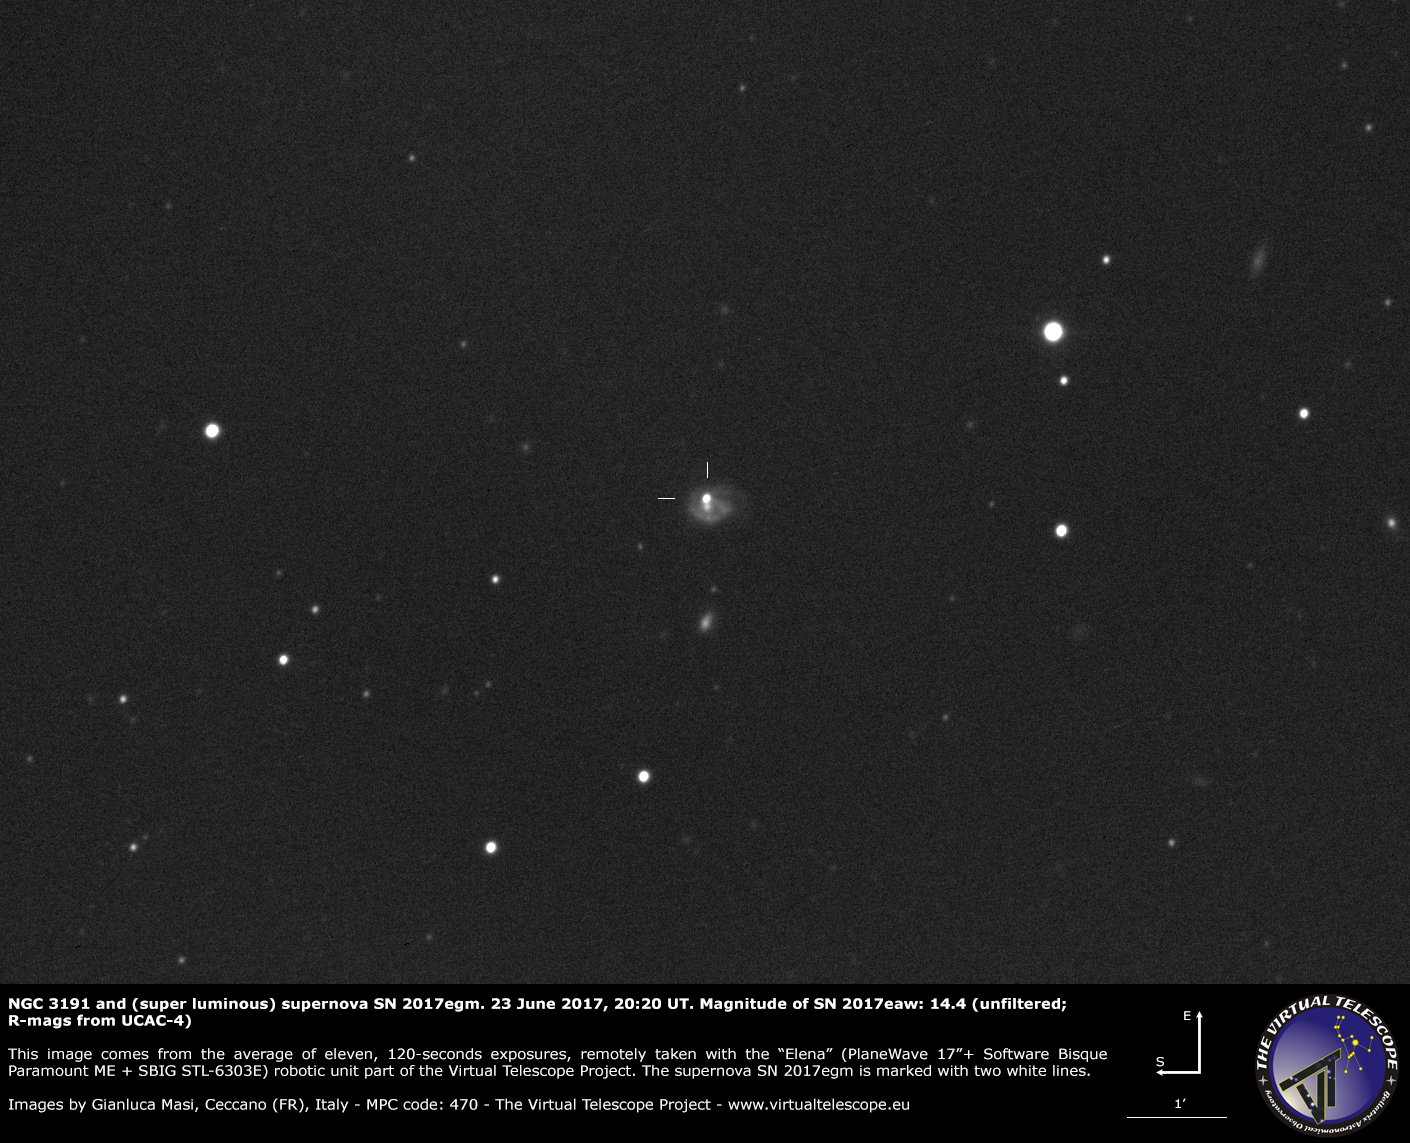 Scopri di più sull'articolo NGC 3191 e la supernova super luminosa povera in idrogeno SN 2017egm: 23 giugno 2017